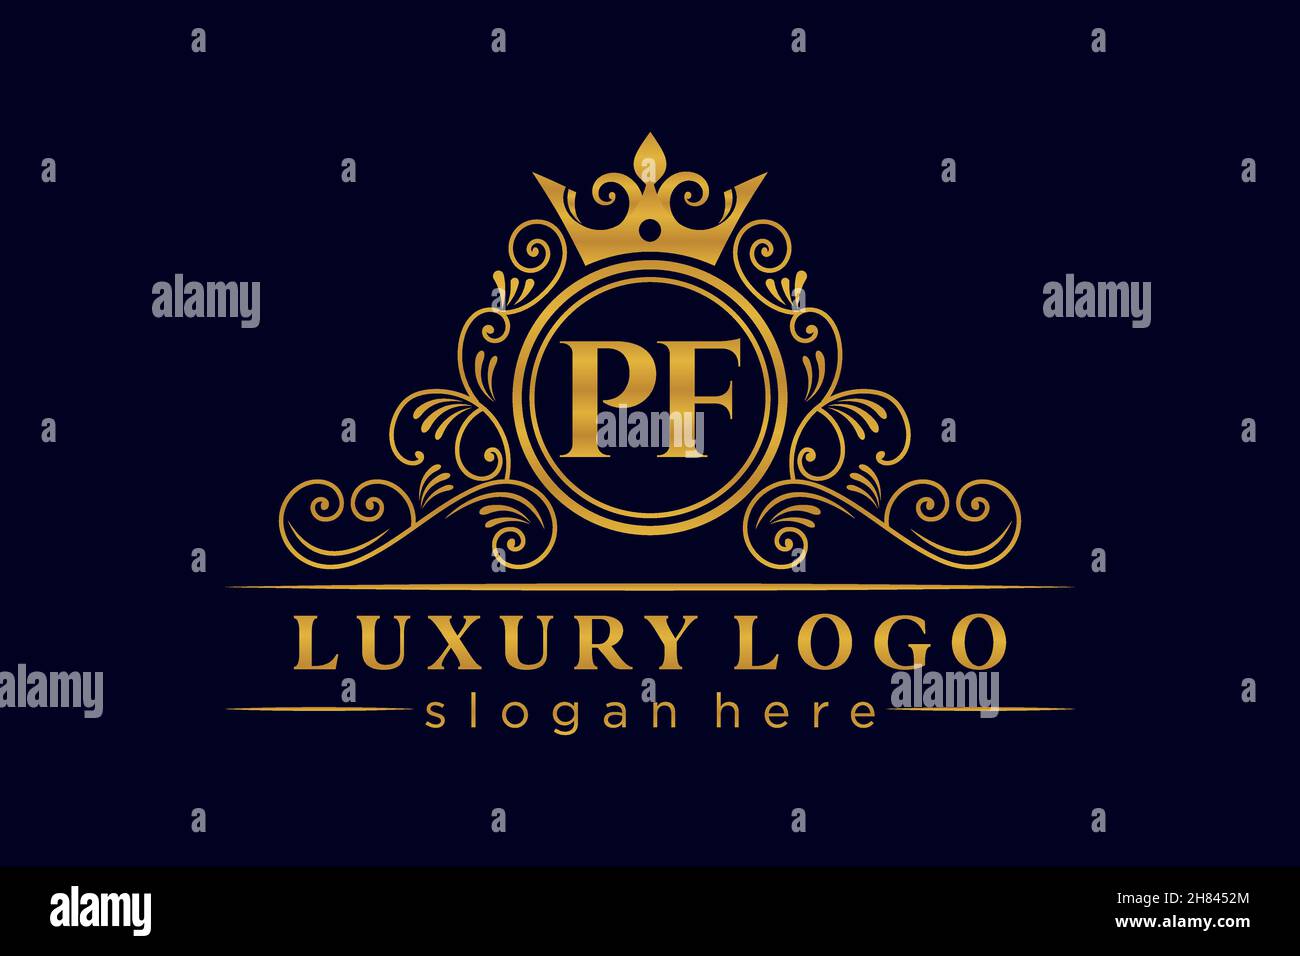 PF Initial Letter Gold calligraphic feminine floral hand drawn heraldic monogram antique vintage style luxury logo design Premium Stock Vector